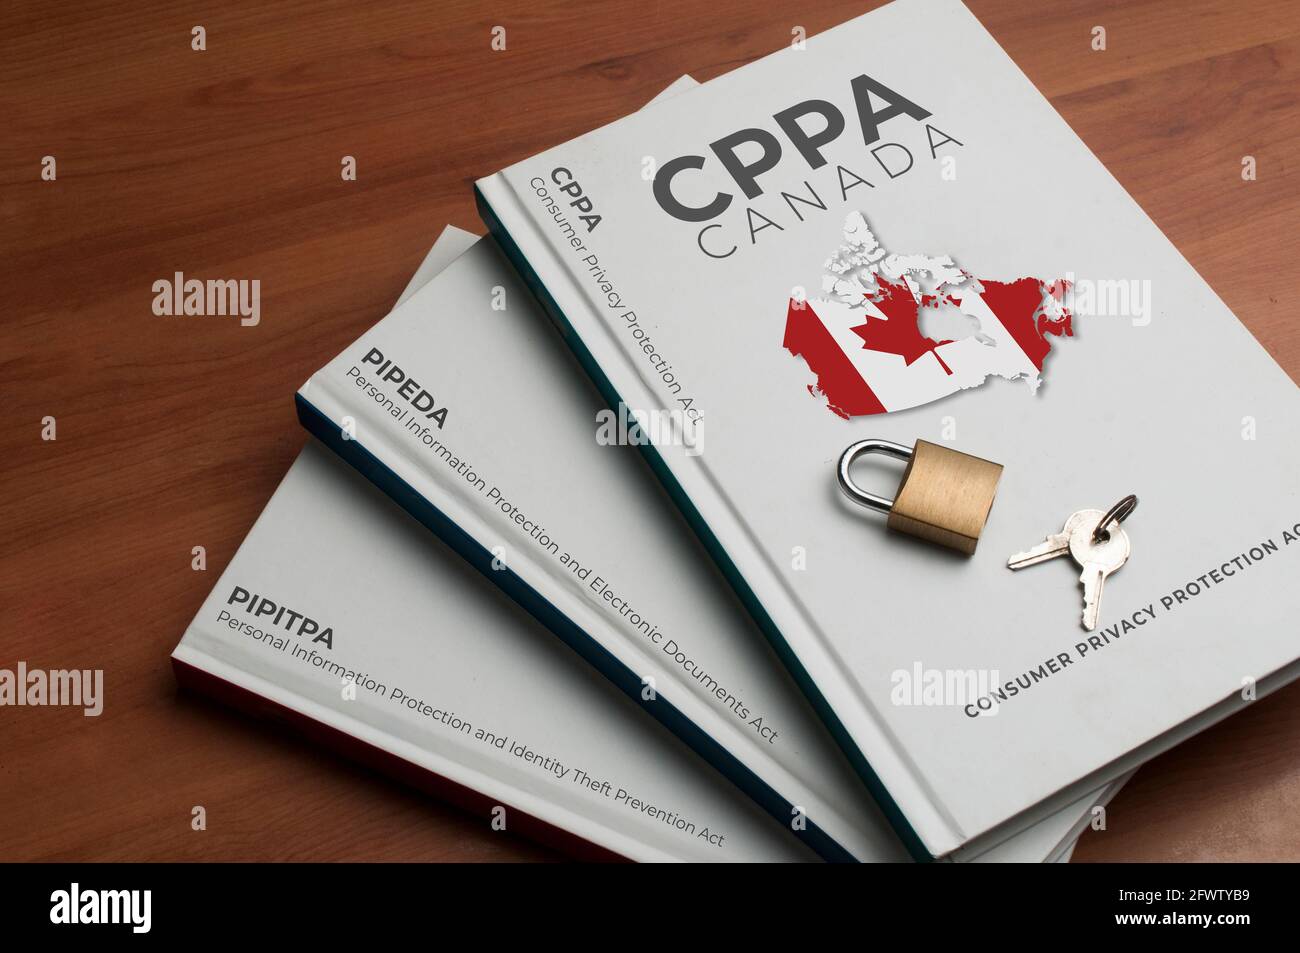 Nouveau concept de loi canadienne sur la protection des données (lcpp) : trois livres indiquent le nom de l'ancienne et de la nouvelle loi canadienne sur la protection des données Banque D'Images